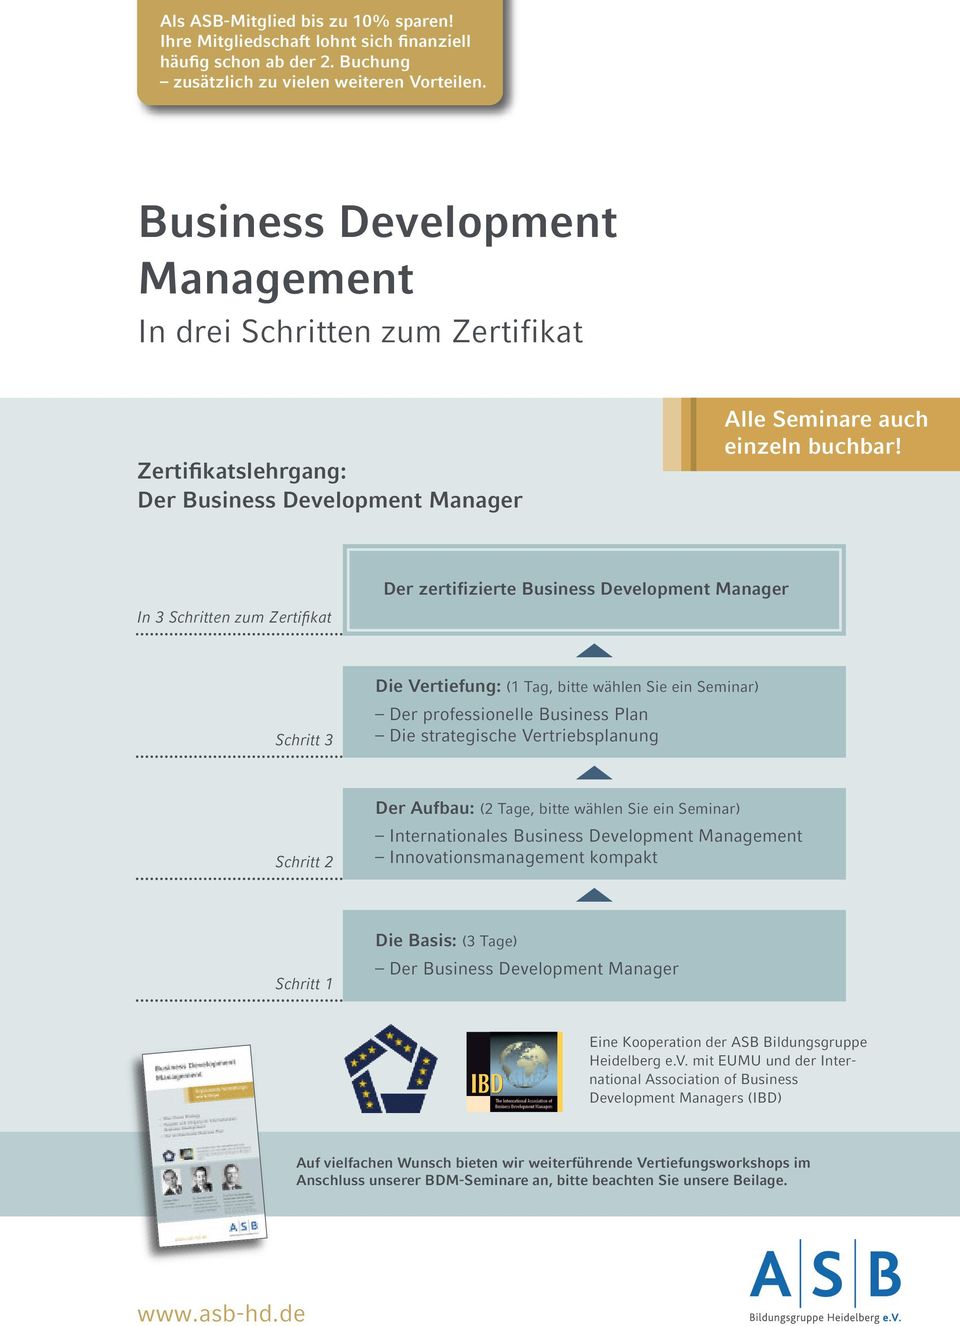 Der zertifizierte Business Development Manager In 3 Schritten zum Zertifikat Schritt 3 Die Vertiefung: (1 Tag, bitte wählen Sie ein Seminar) Der professionelle Business Plan Die strategische